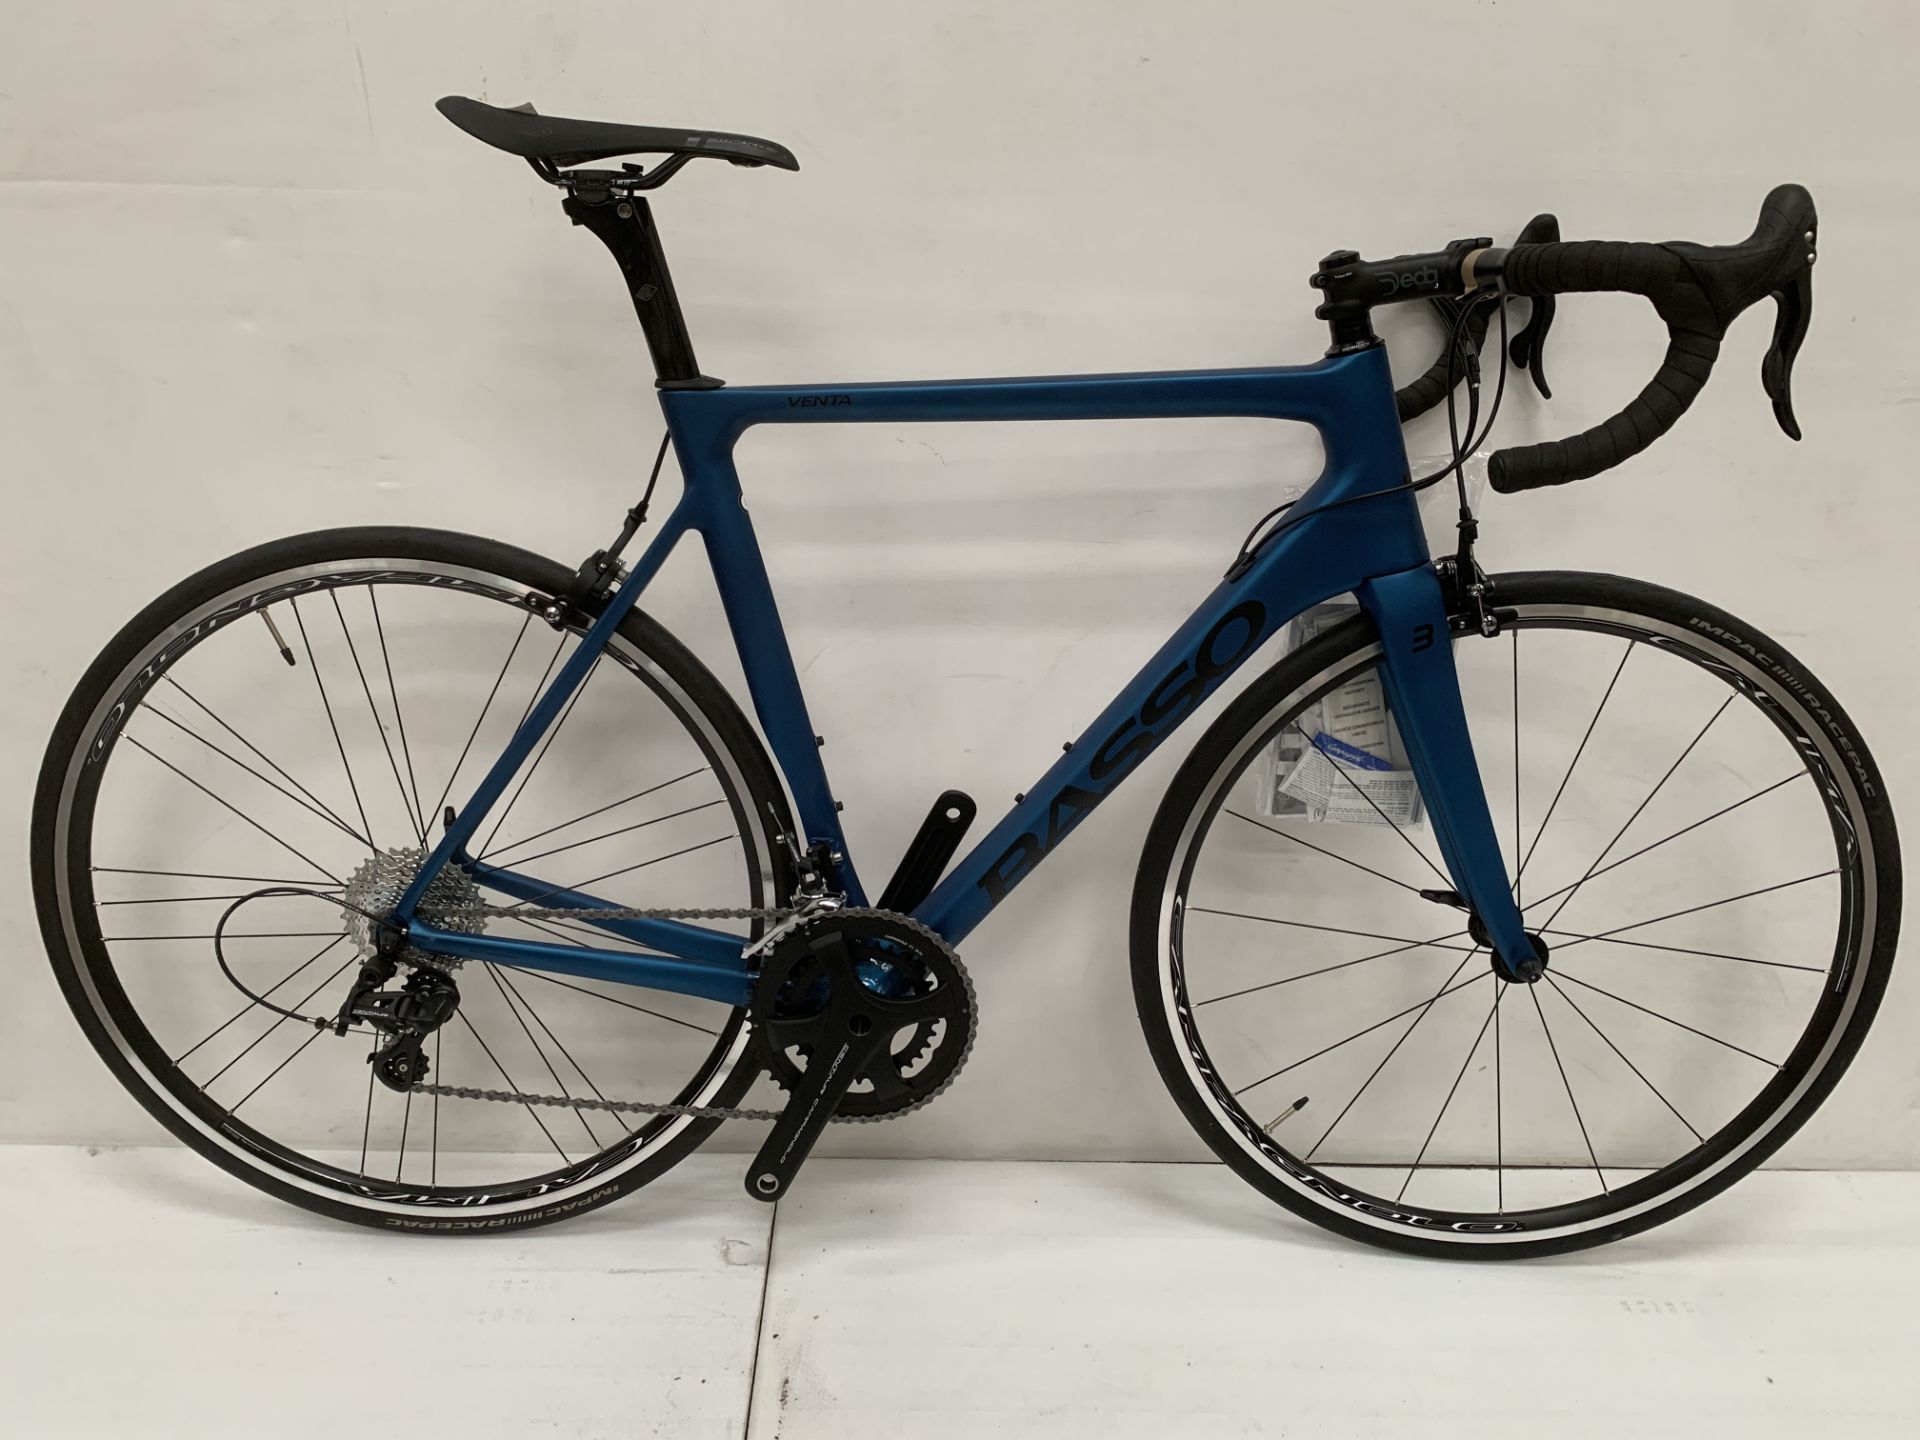 Basso Venta Campagnolo Centaur Bicycle. RRP £2049